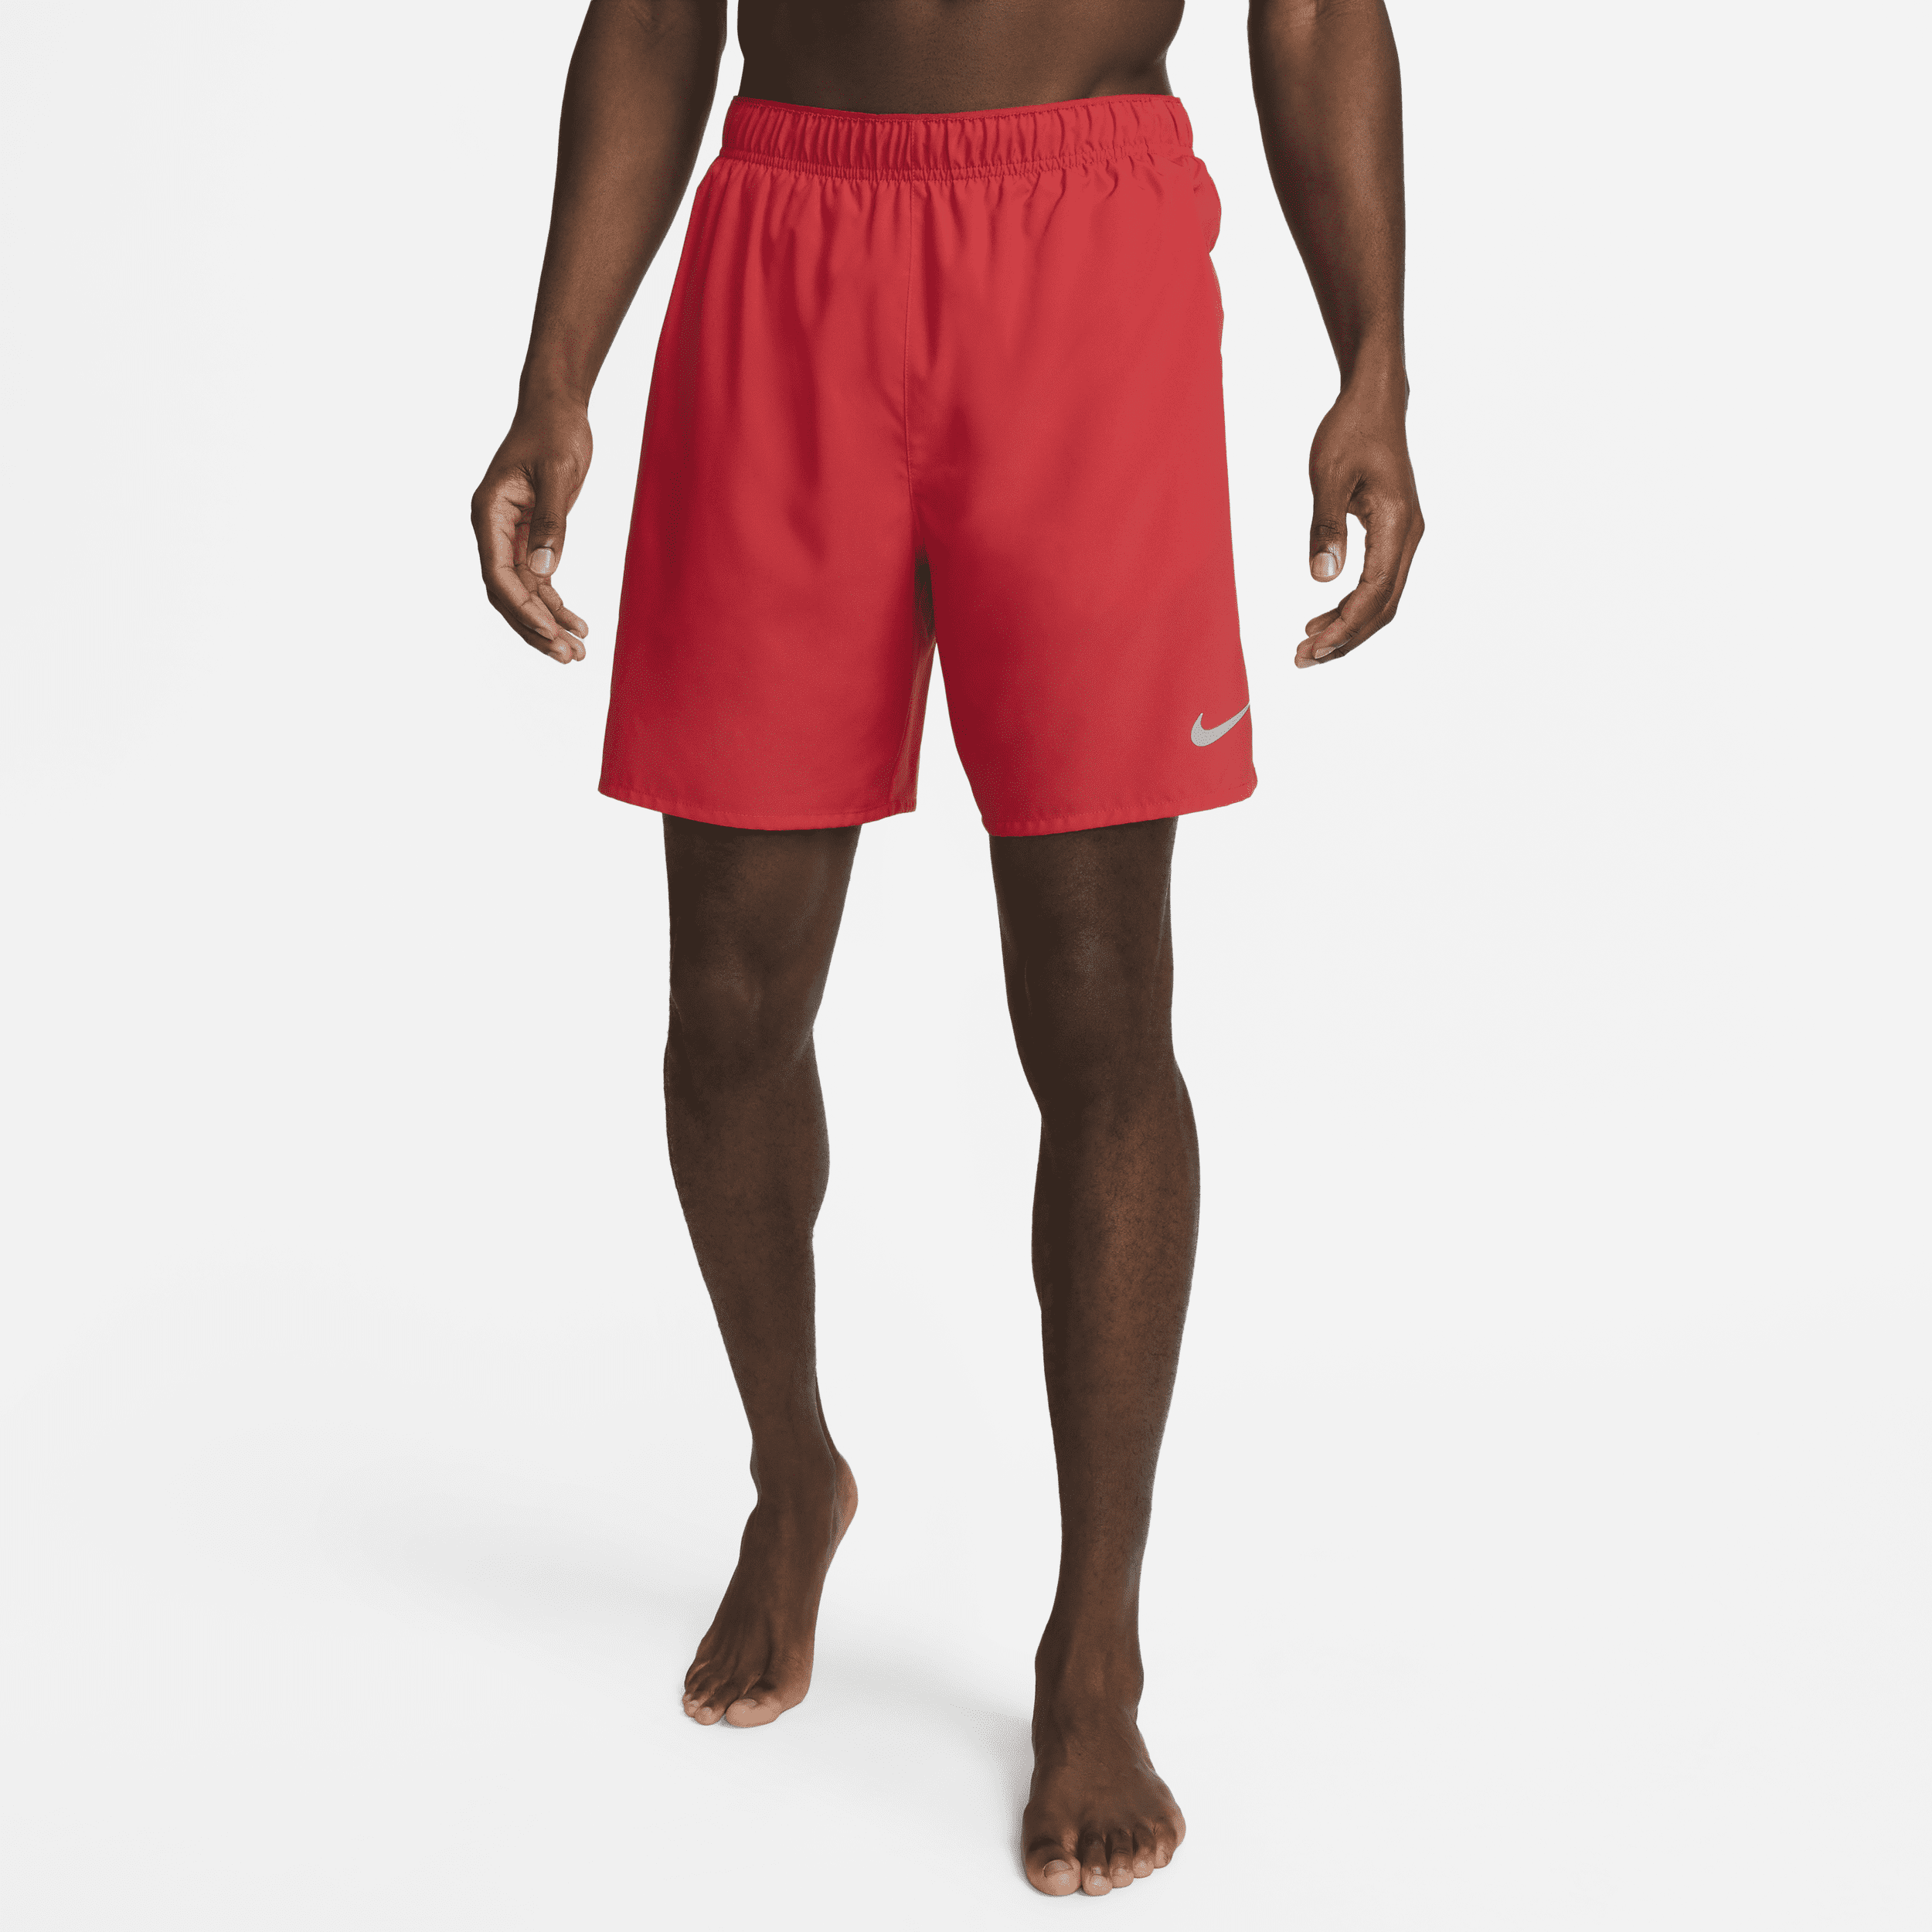 Shorts da running Dri-FIT con slip foderati 18 cm Nike Challenger – Uomo - Rosso